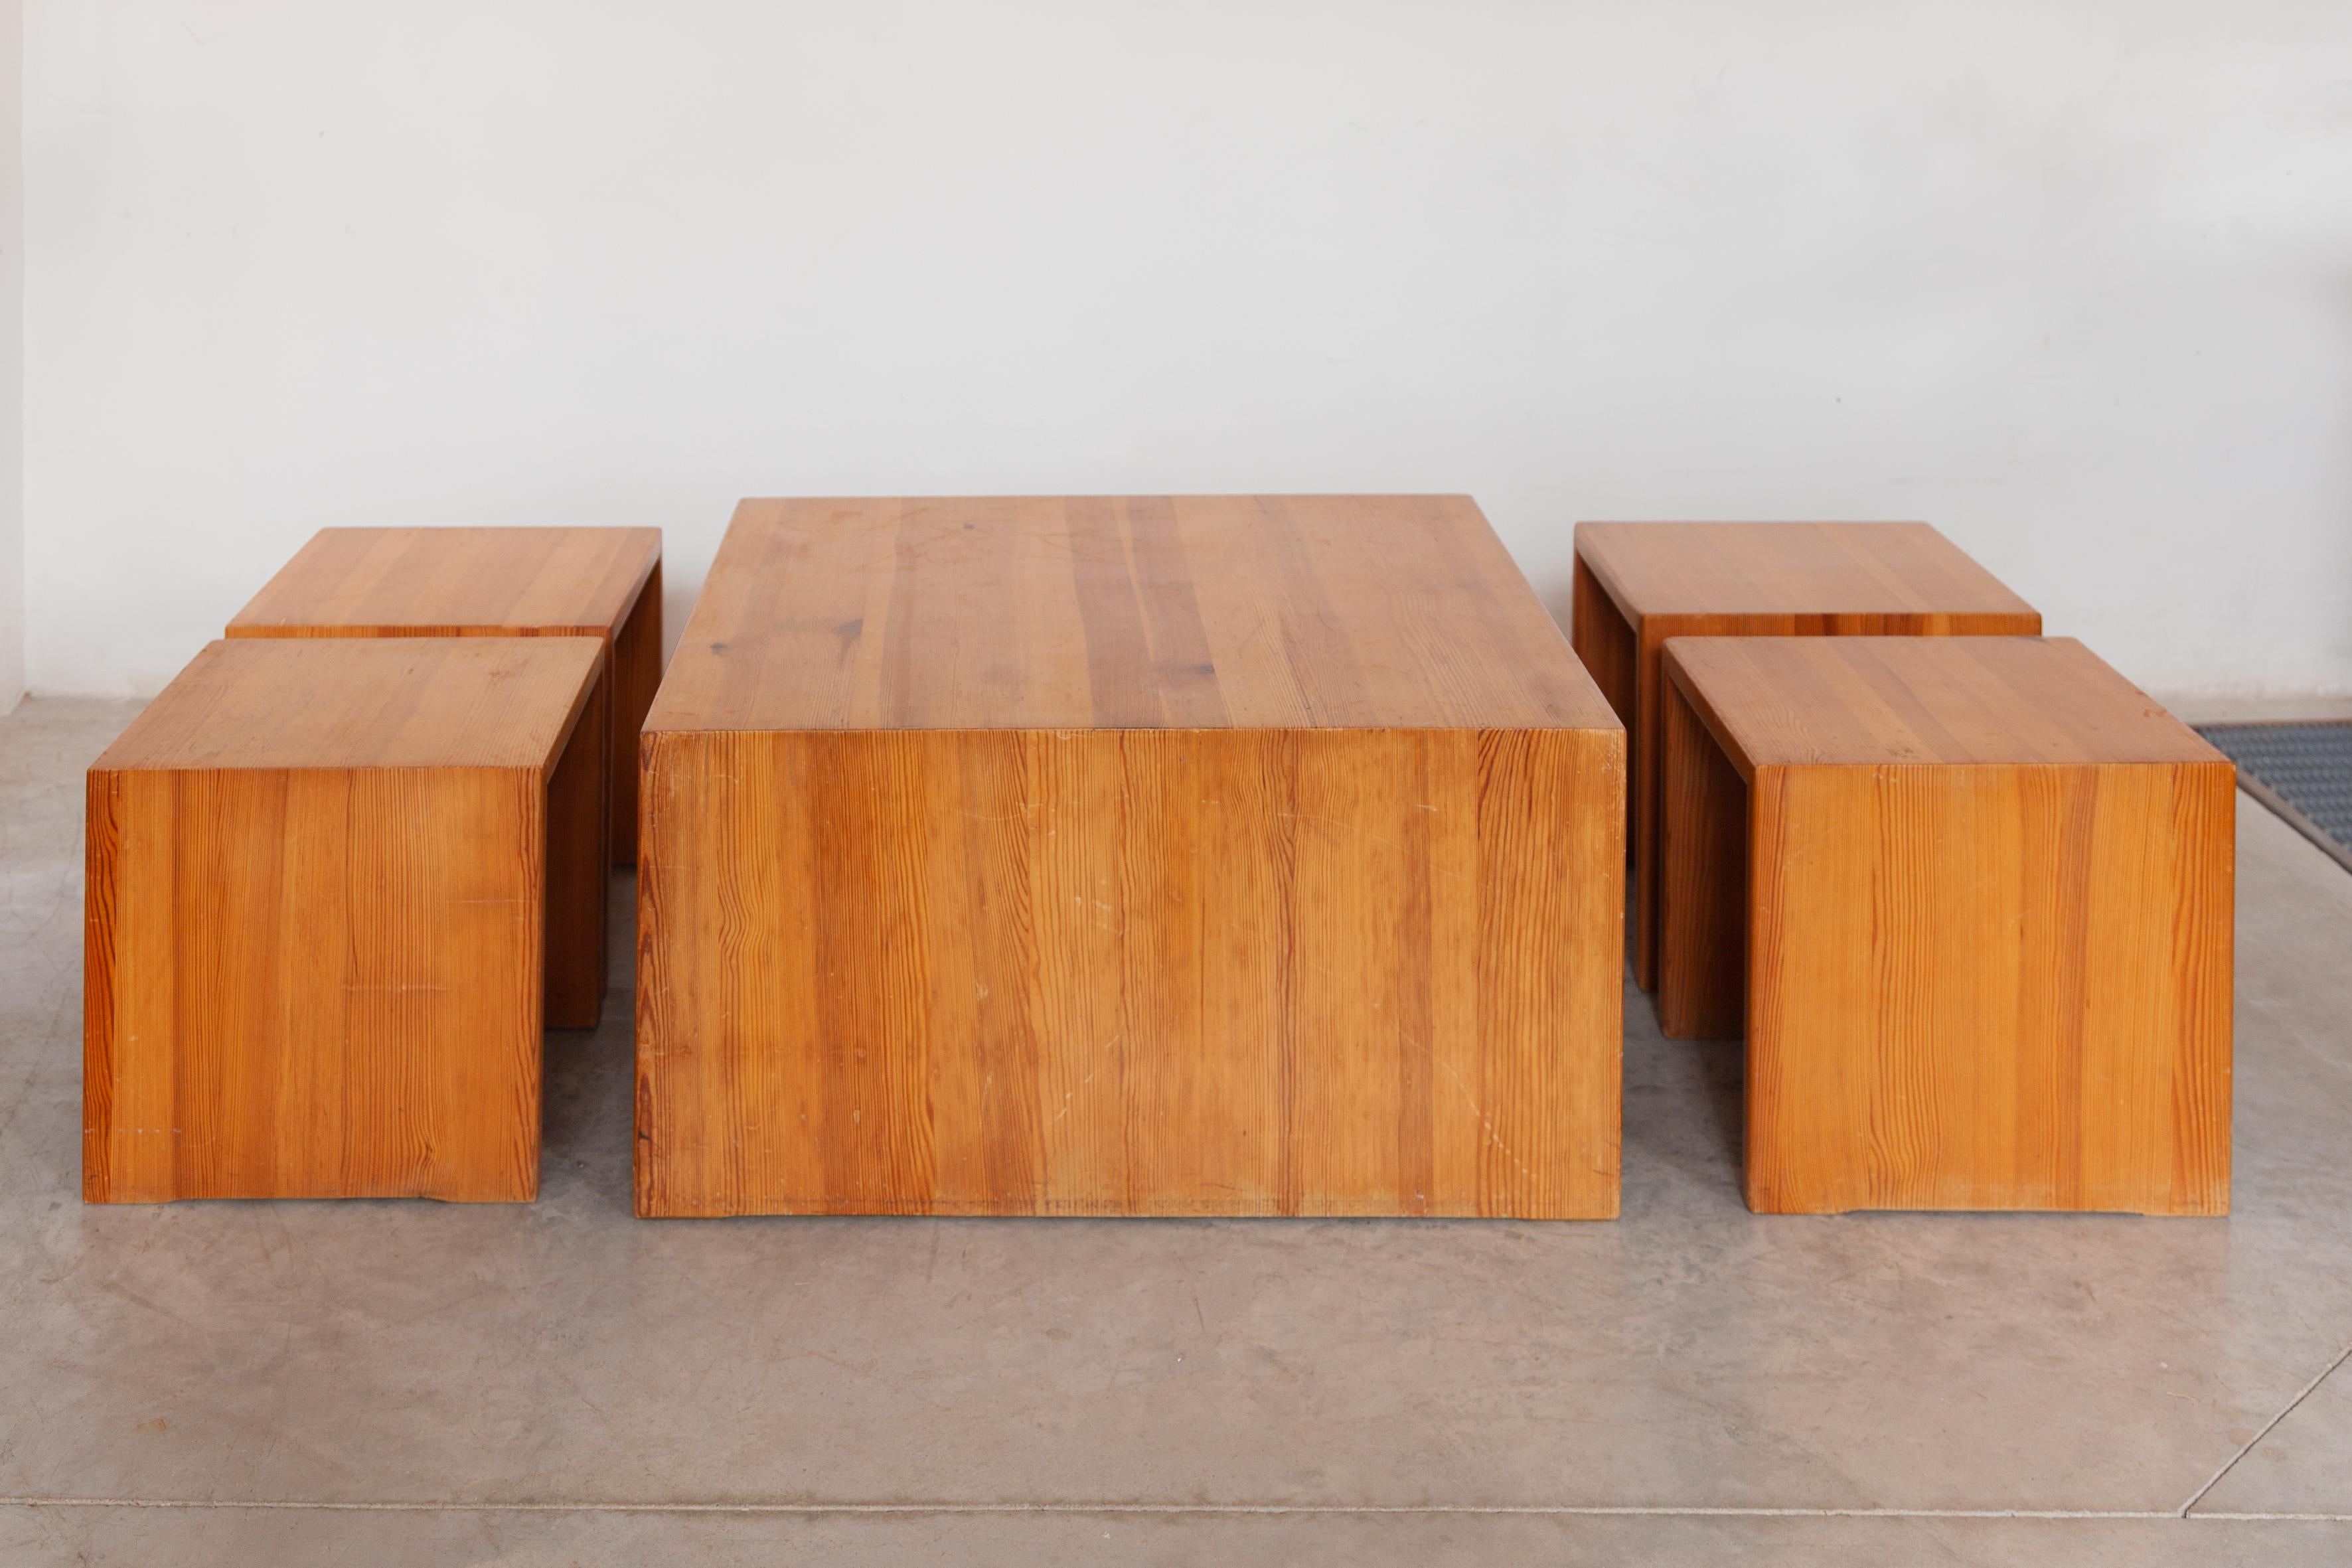 Cet ensemble de quatre tabourets et d'une table a été conçu dans les années 70. Il est composé d'une structure entièrement en pin. La patine visible montre toute l'authenticité de ces pièces qui ont traversé le temps. Avec ses lignes raffinées, cet